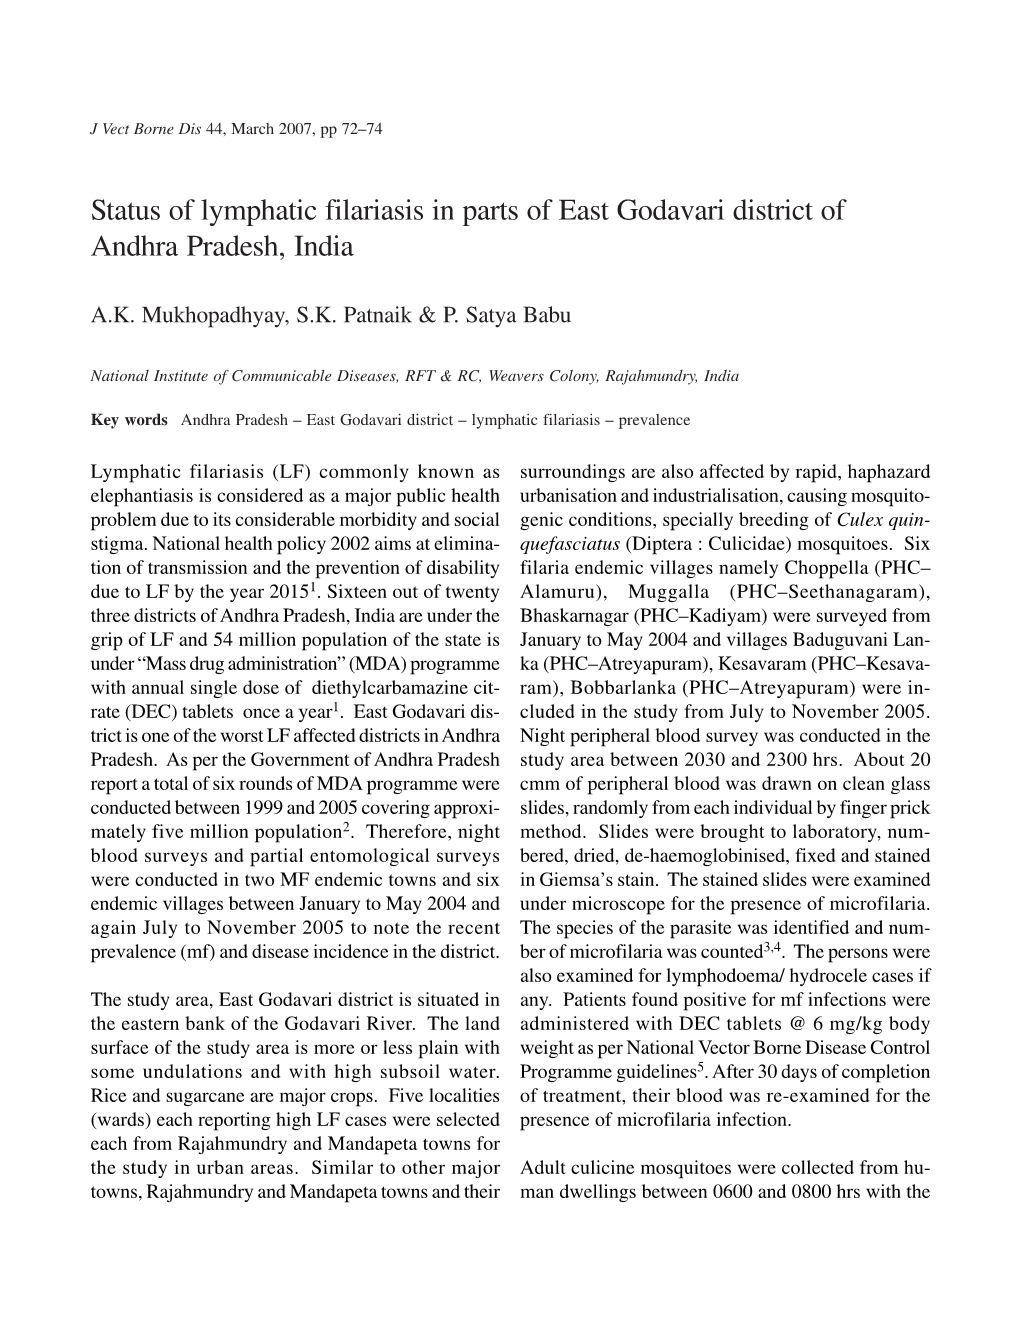 Status of Lymphatic Filariasis in Parts of East Godavari District of Andhra Pradesh, India